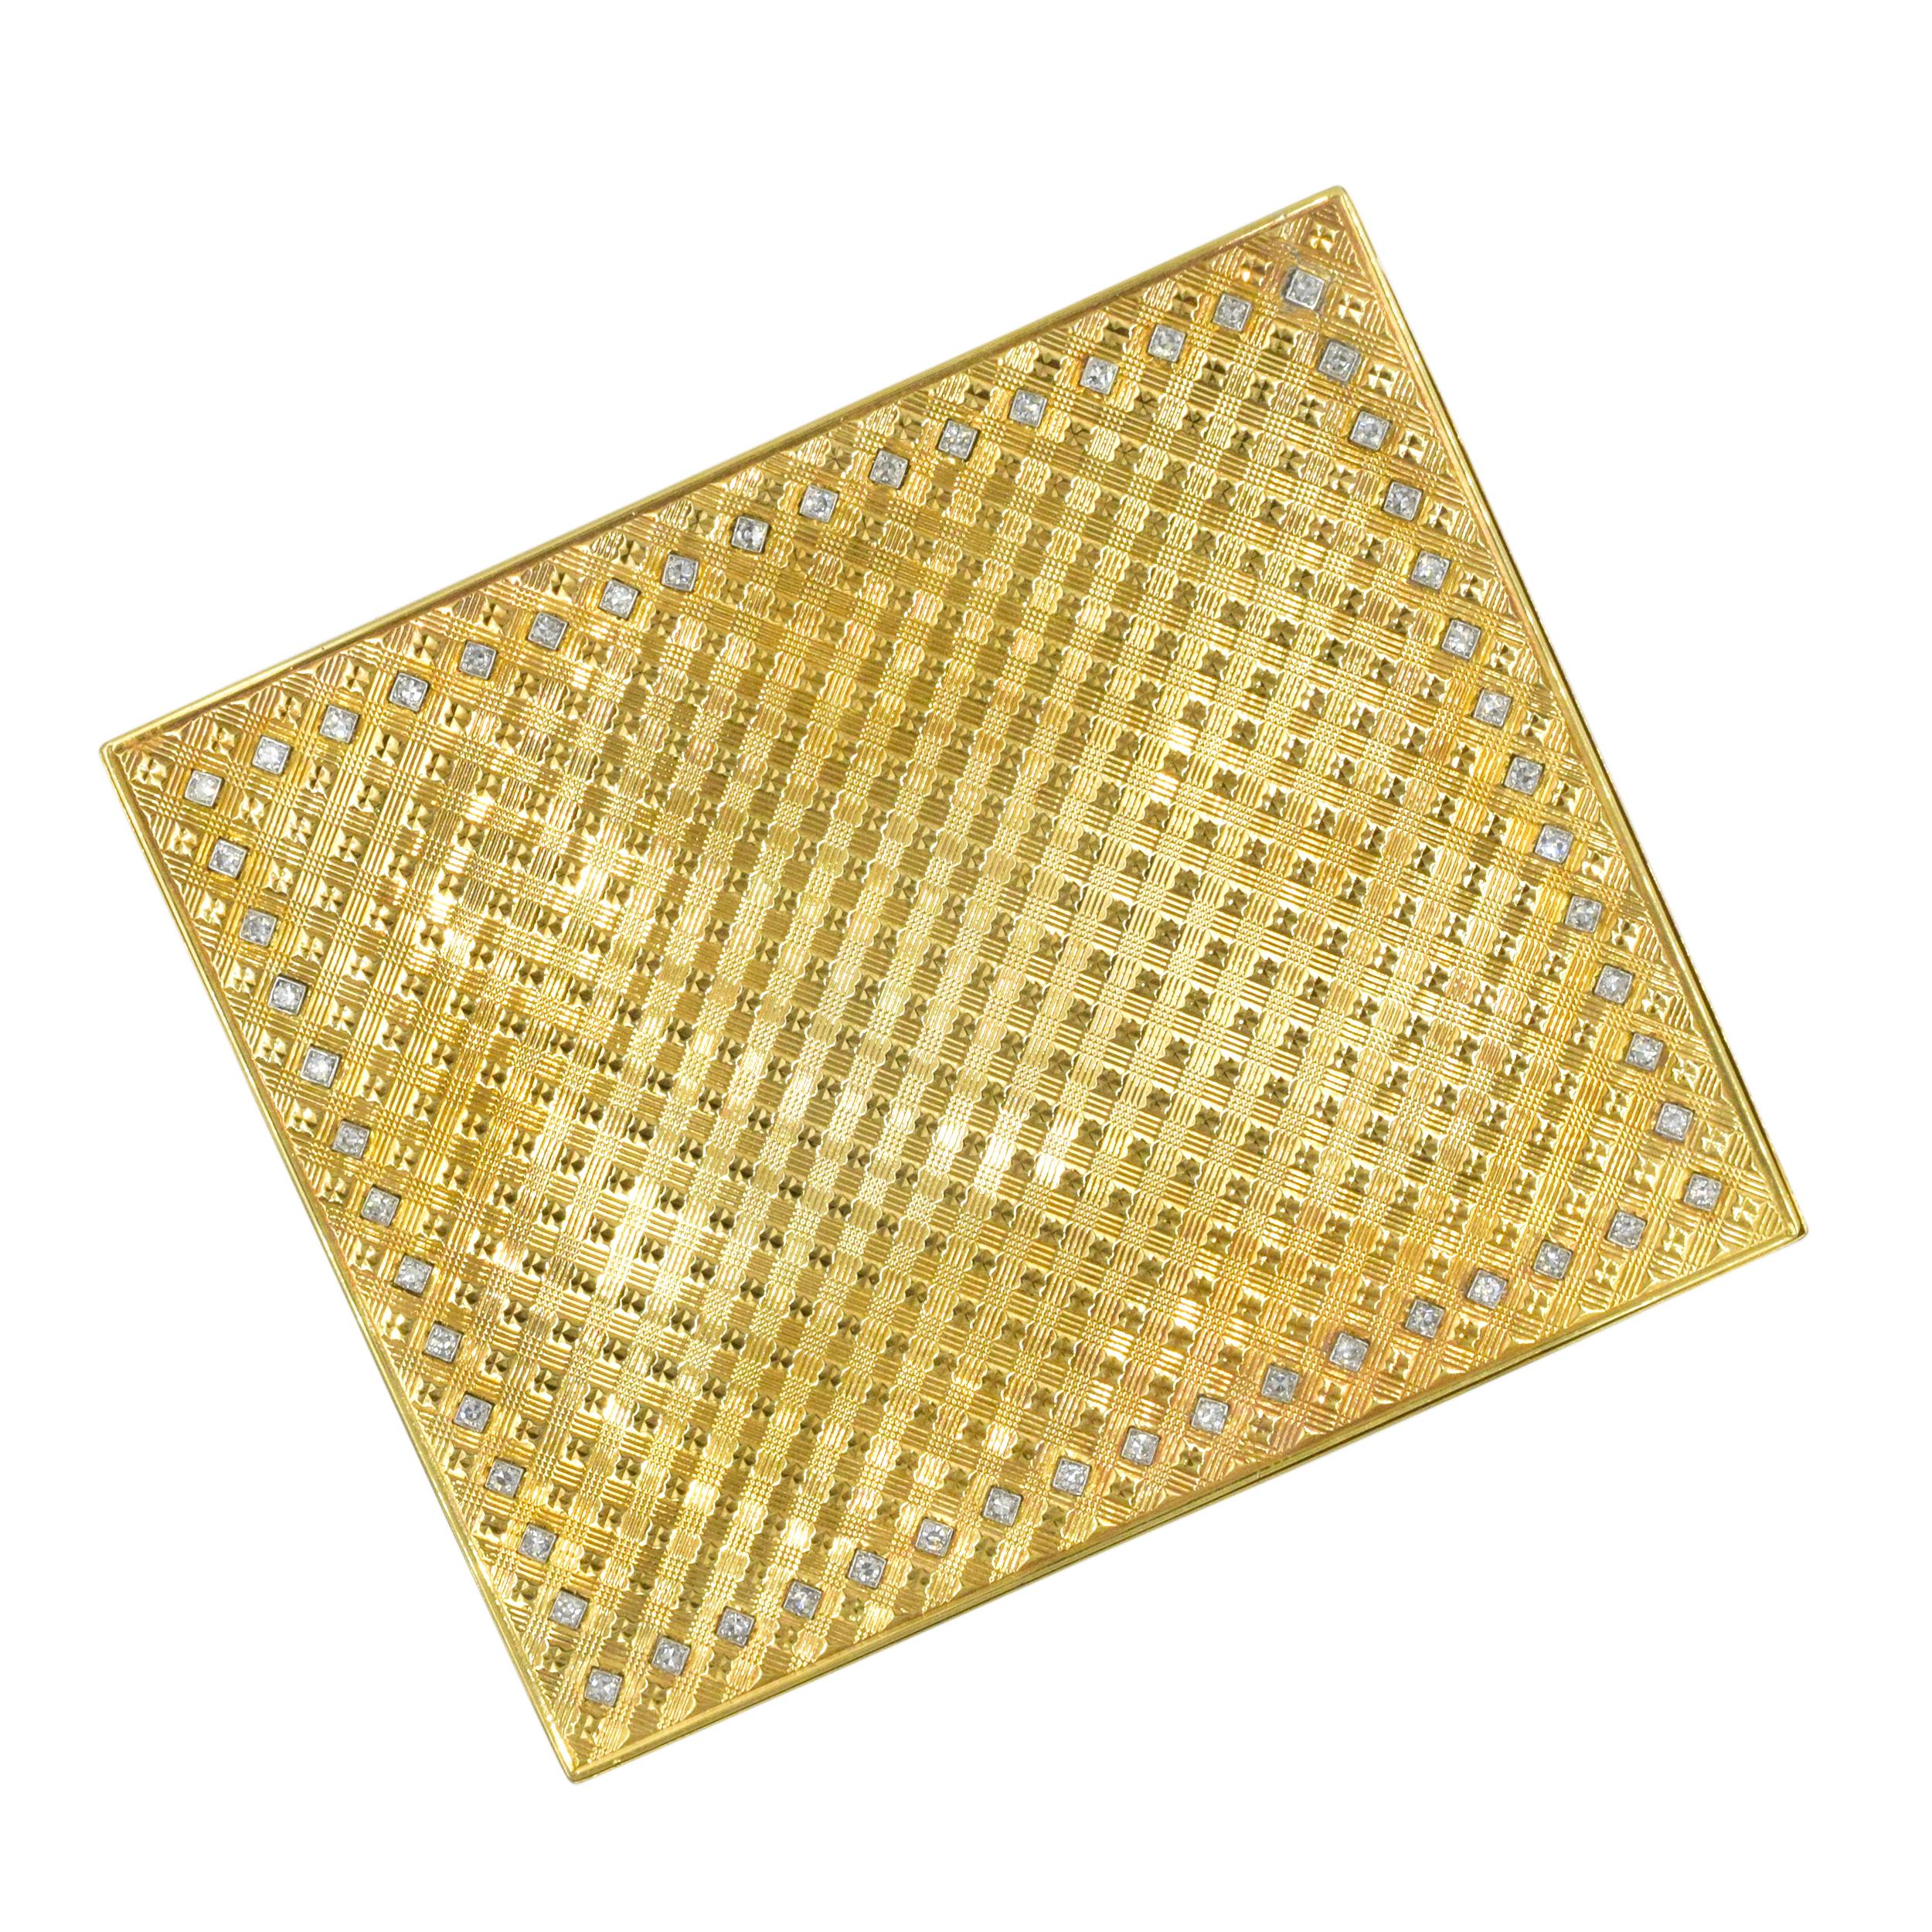 Van Cleef And Arpels kompaktes 18-karätiges Gelbgold und Diamanten. Hergestellt in Frankreich. Das Gehäuse ist außen strukturiert und mit runden Diamanten im Einzelschliff verziert.
Gewicht von ca. 1,15 ct, Farbe H-J, Reinheit SI. Eingeschrieben: